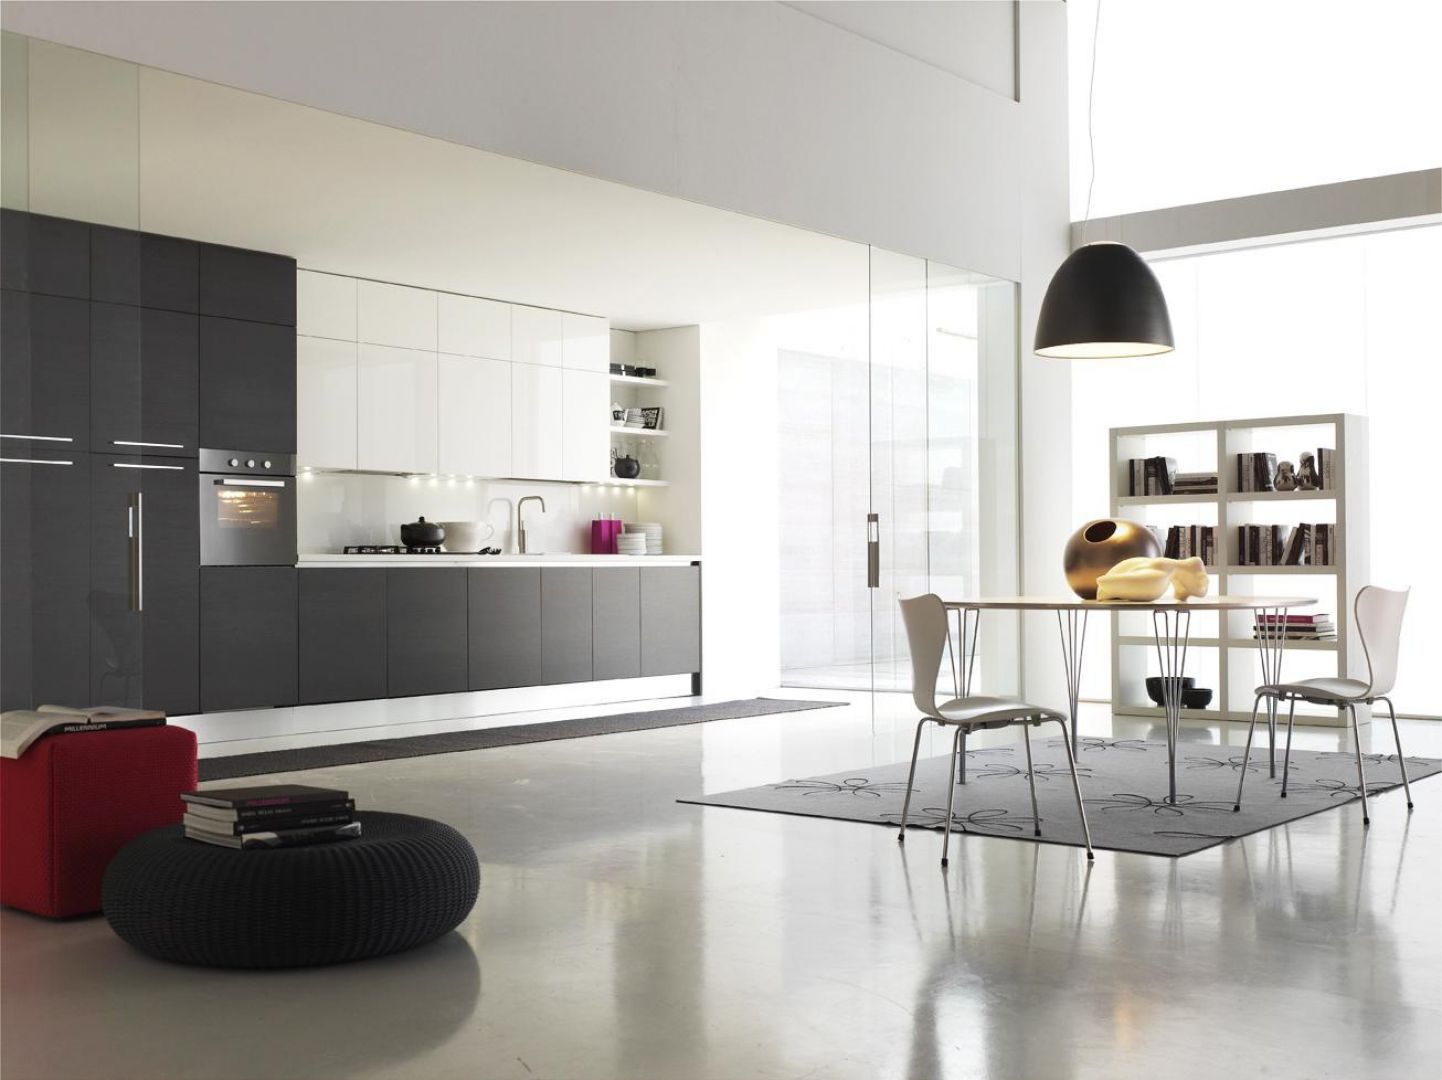 W przypadku ciemniejszych frontów kuchennych, pomieszczenie można rozjaśnić białą podłogą i białym sufitem.
Fot. Italia Style